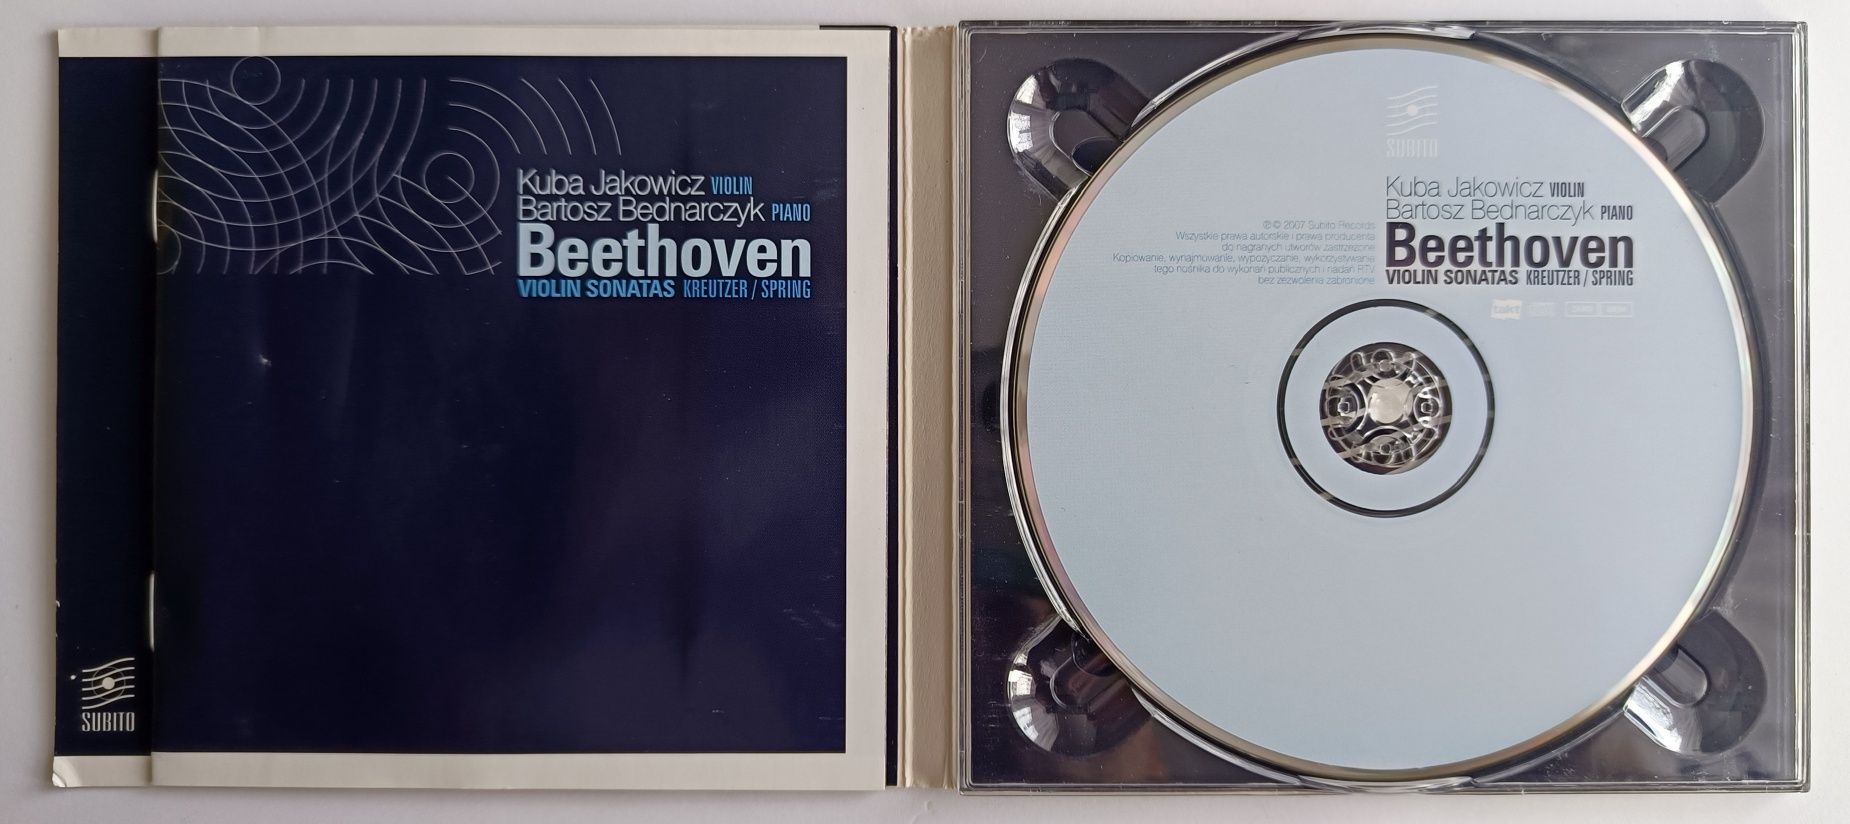 Kuba Jakowicz Bartosz Bednarczyk Beethoven 2007r